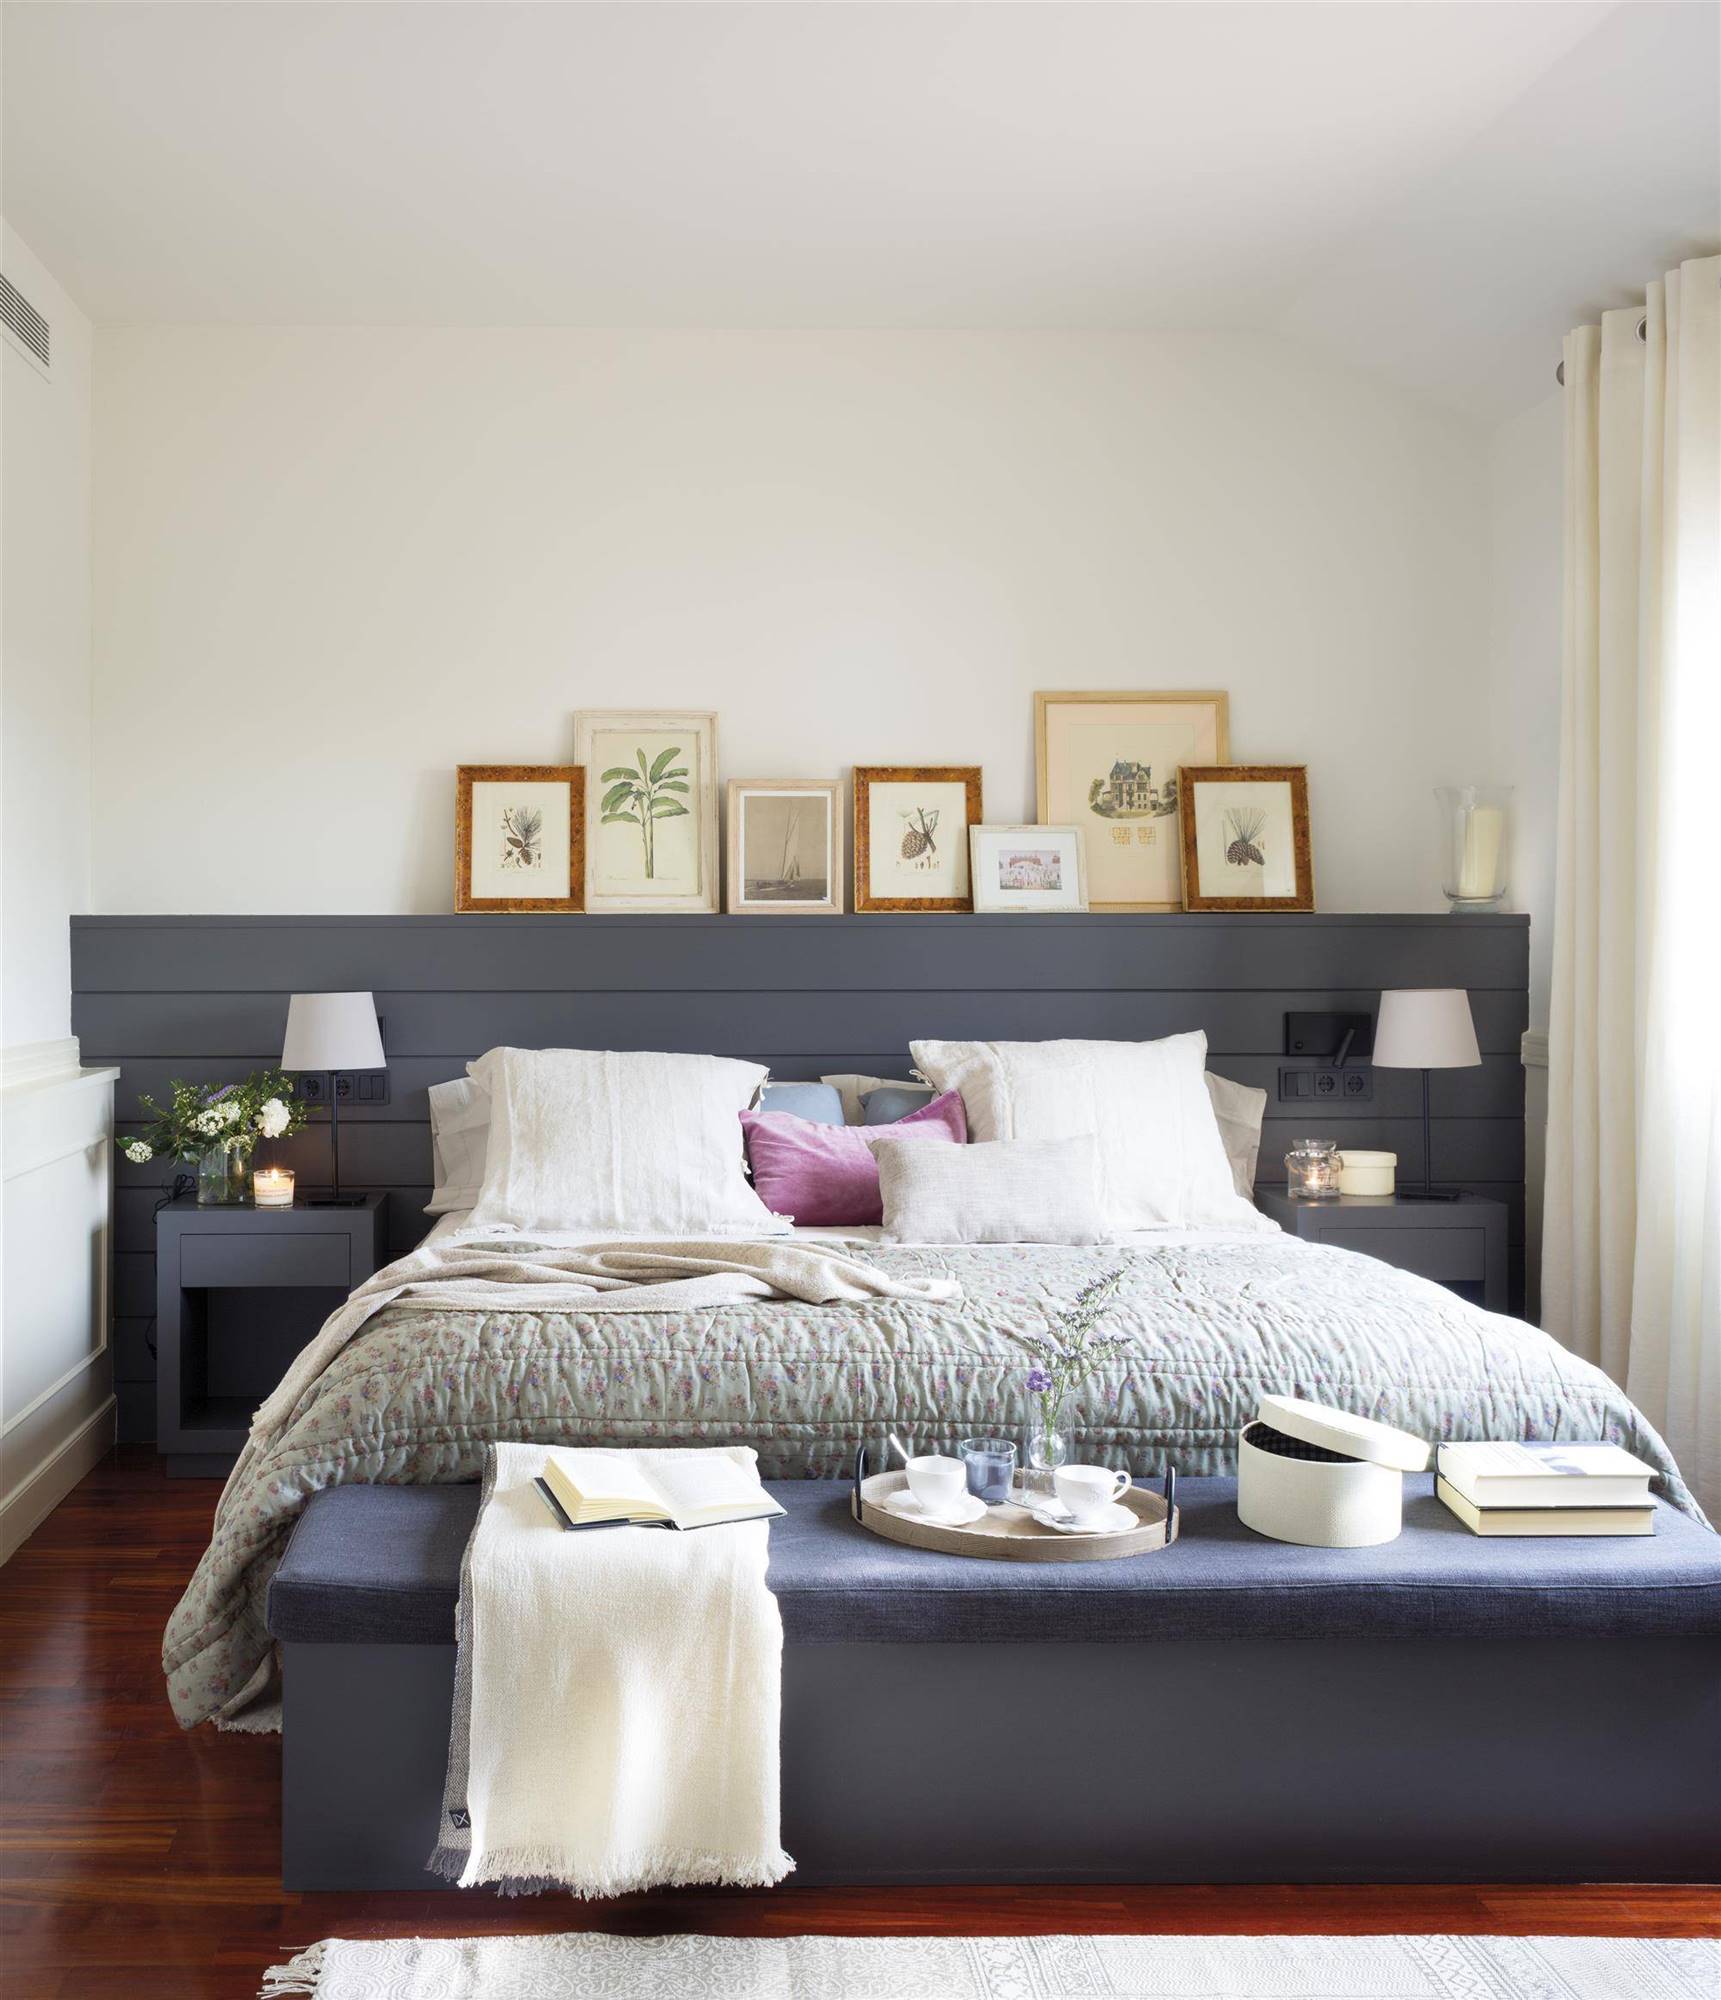 Dormitorio blanco con cabecero con listones de madera de color azul oscuro_0460956